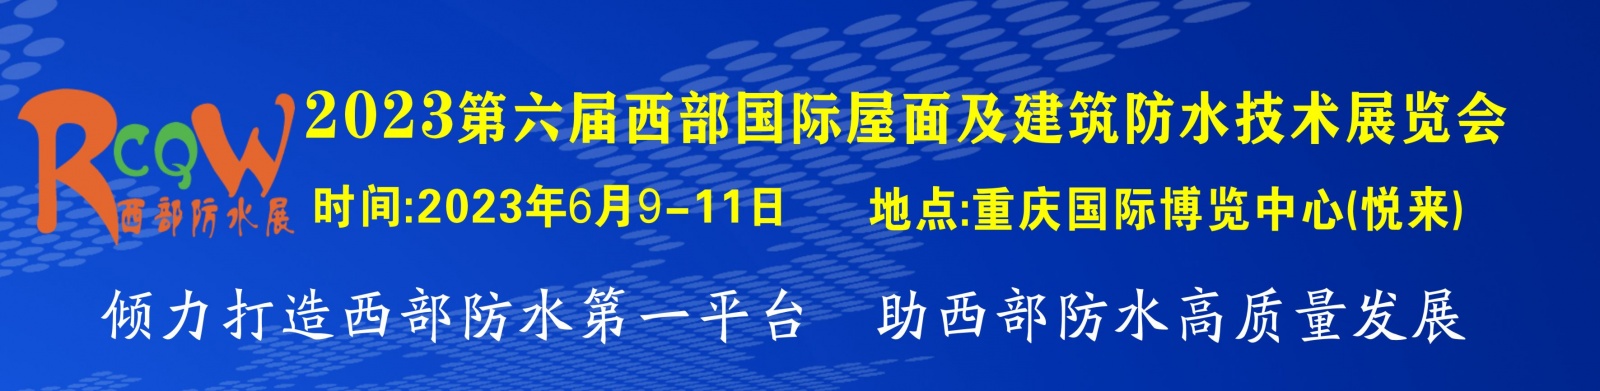 2023西部重庆国际屋面及建筑防水技术展览会